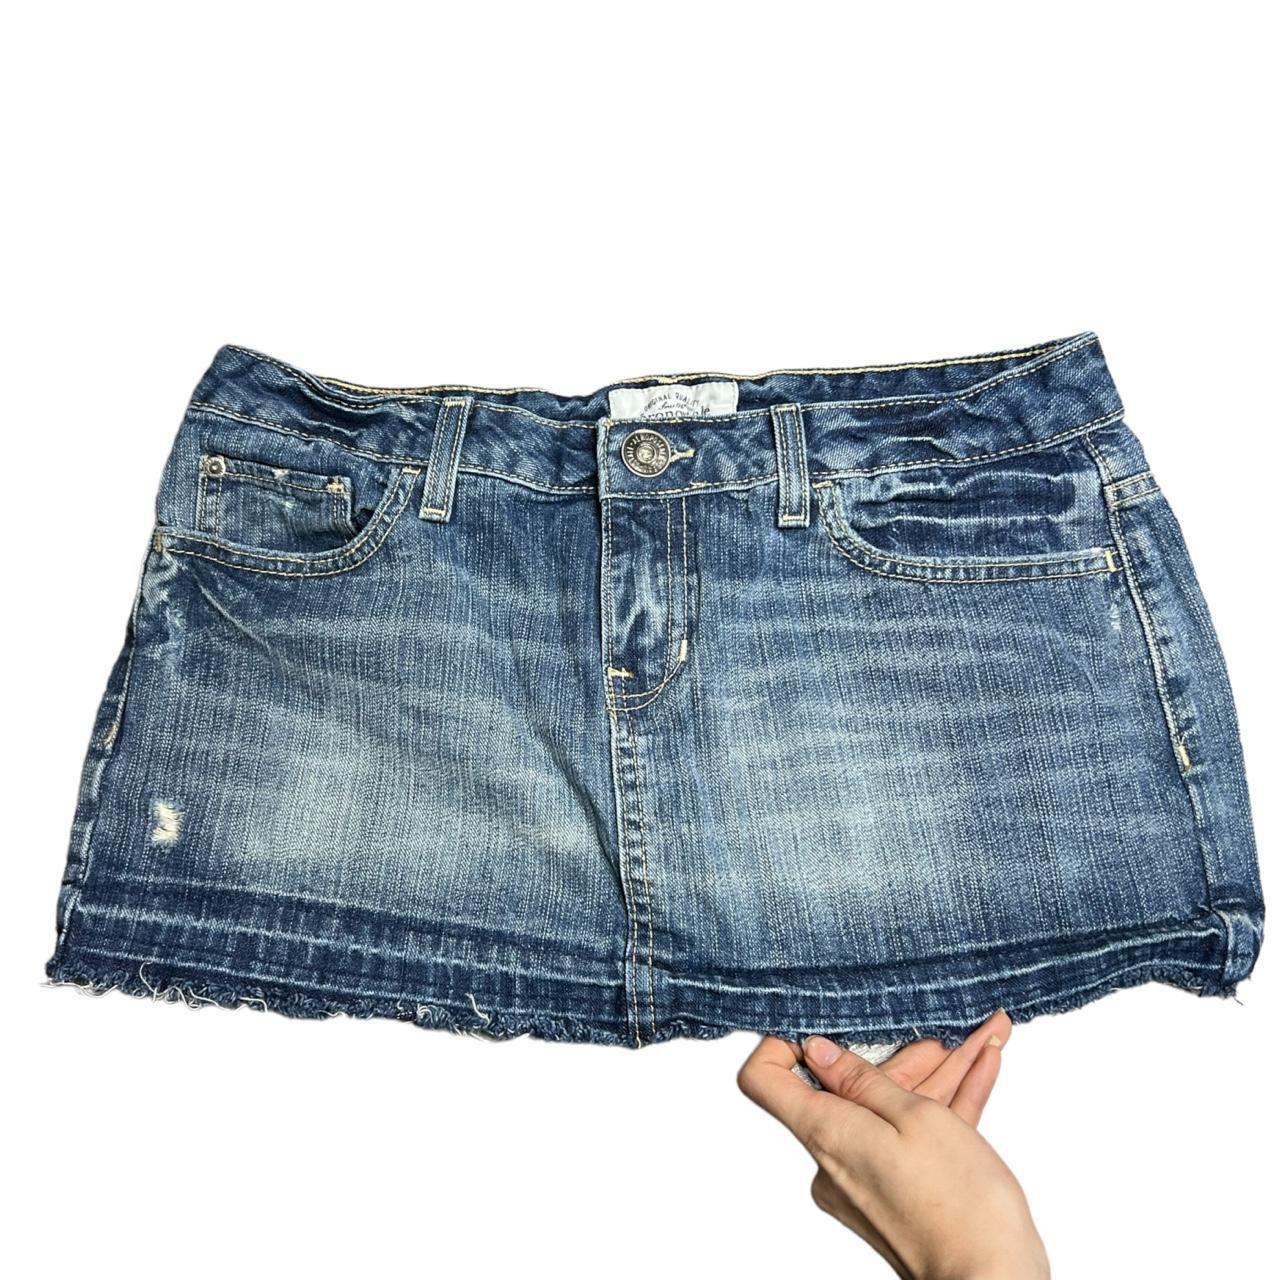 Micro Mini Skirt 2000s Denim Distressed Raw Hem Low... - Depop